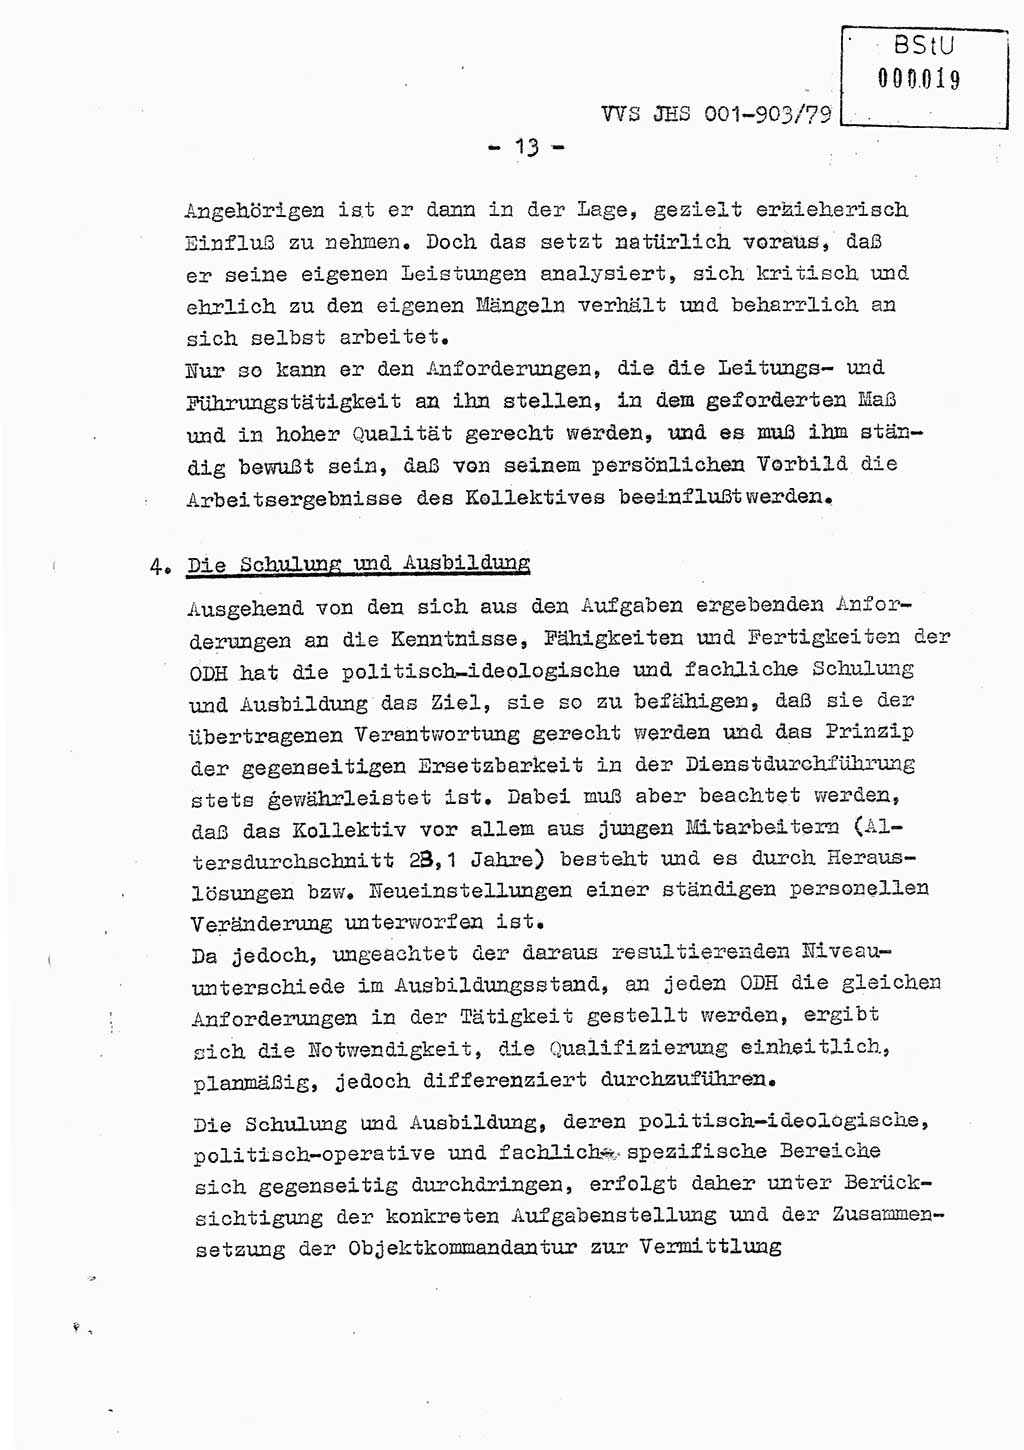 Fachschulabschlußarbeit Oberleutnant Jochen Pfeffer (HA Ⅸ/AGL), Ministerium für Staatssicherheit (MfS) [Deutsche Demokratische Republik (DDR)], Juristische Hochschule (JHS), Vertrauliche Verschlußsache (VVS) 001-903/79, Potsdam 1979, Seite 13 (FS-Abschl.-Arb. MfS DDR JHS VVS 001-903/79 1979, S. 13)